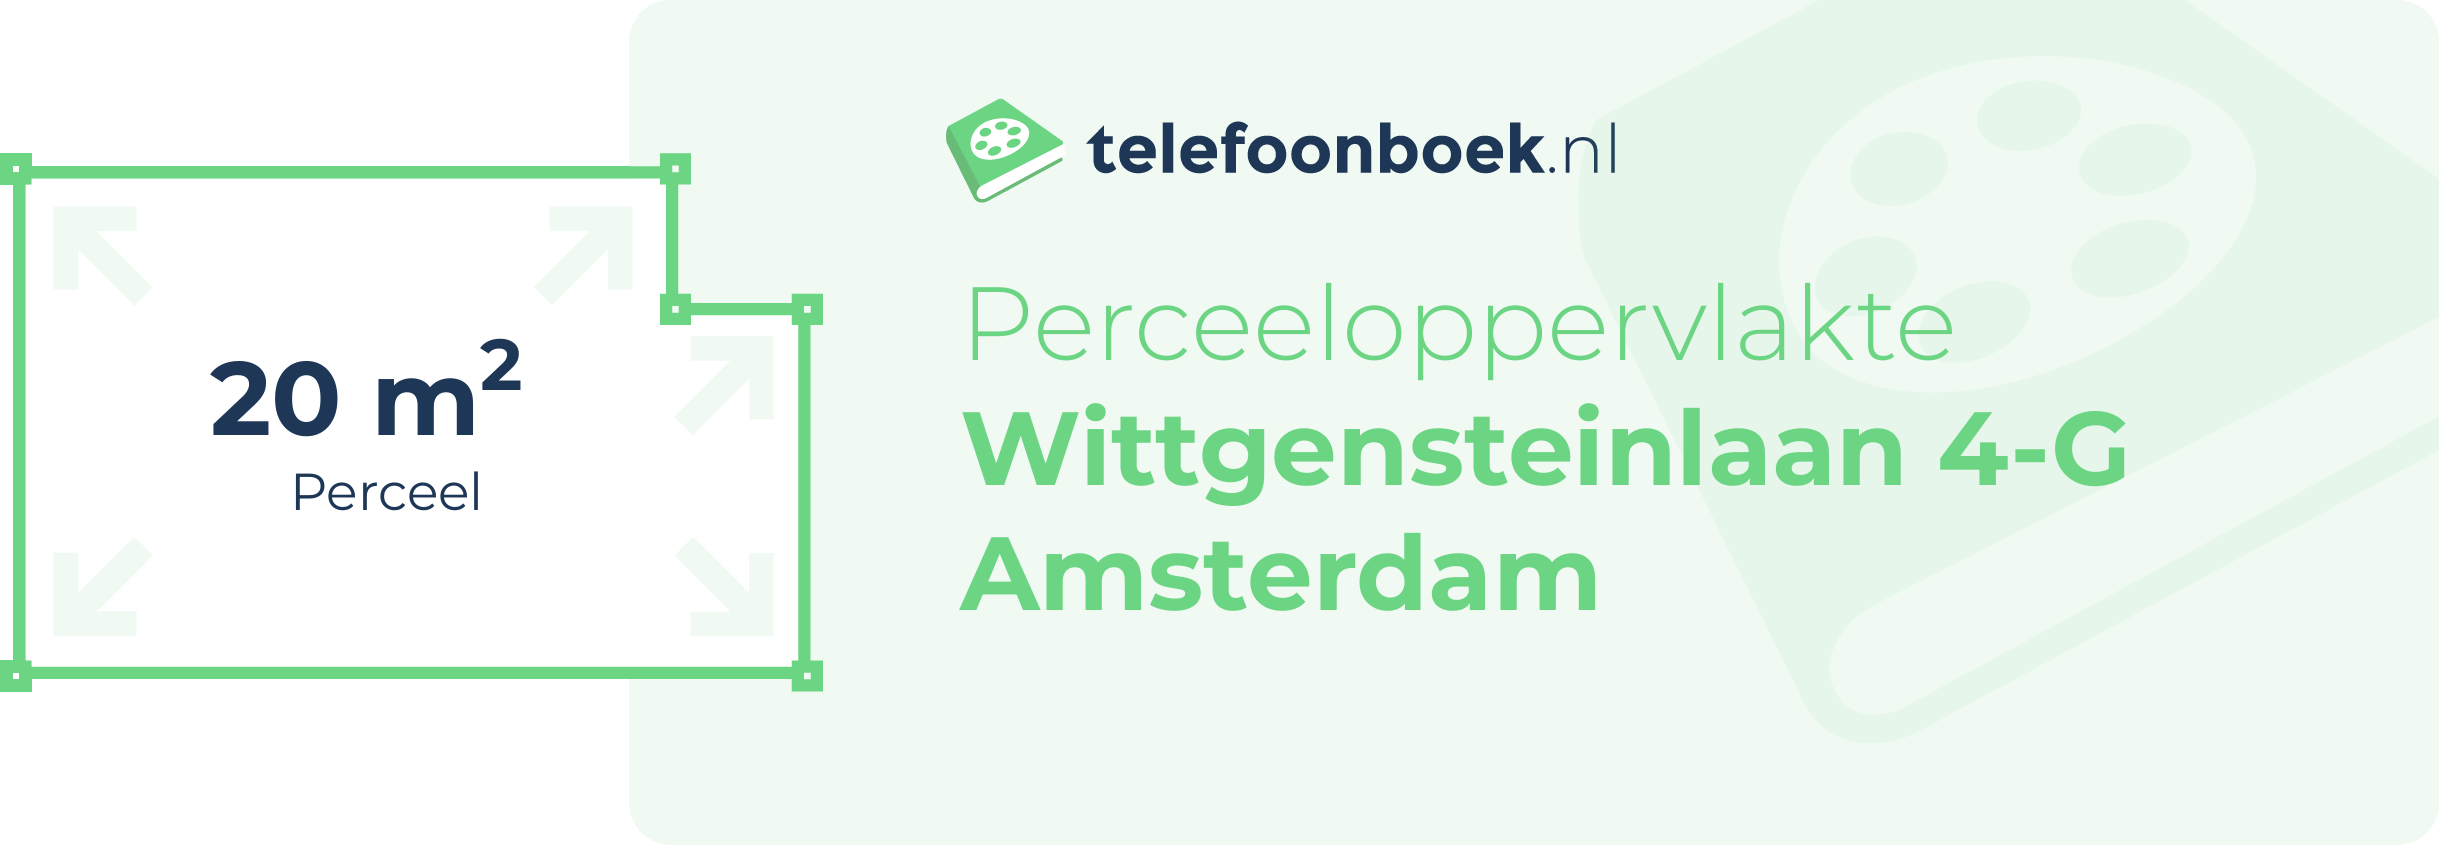 Perceeloppervlakte Wittgensteinlaan 4-G Amsterdam